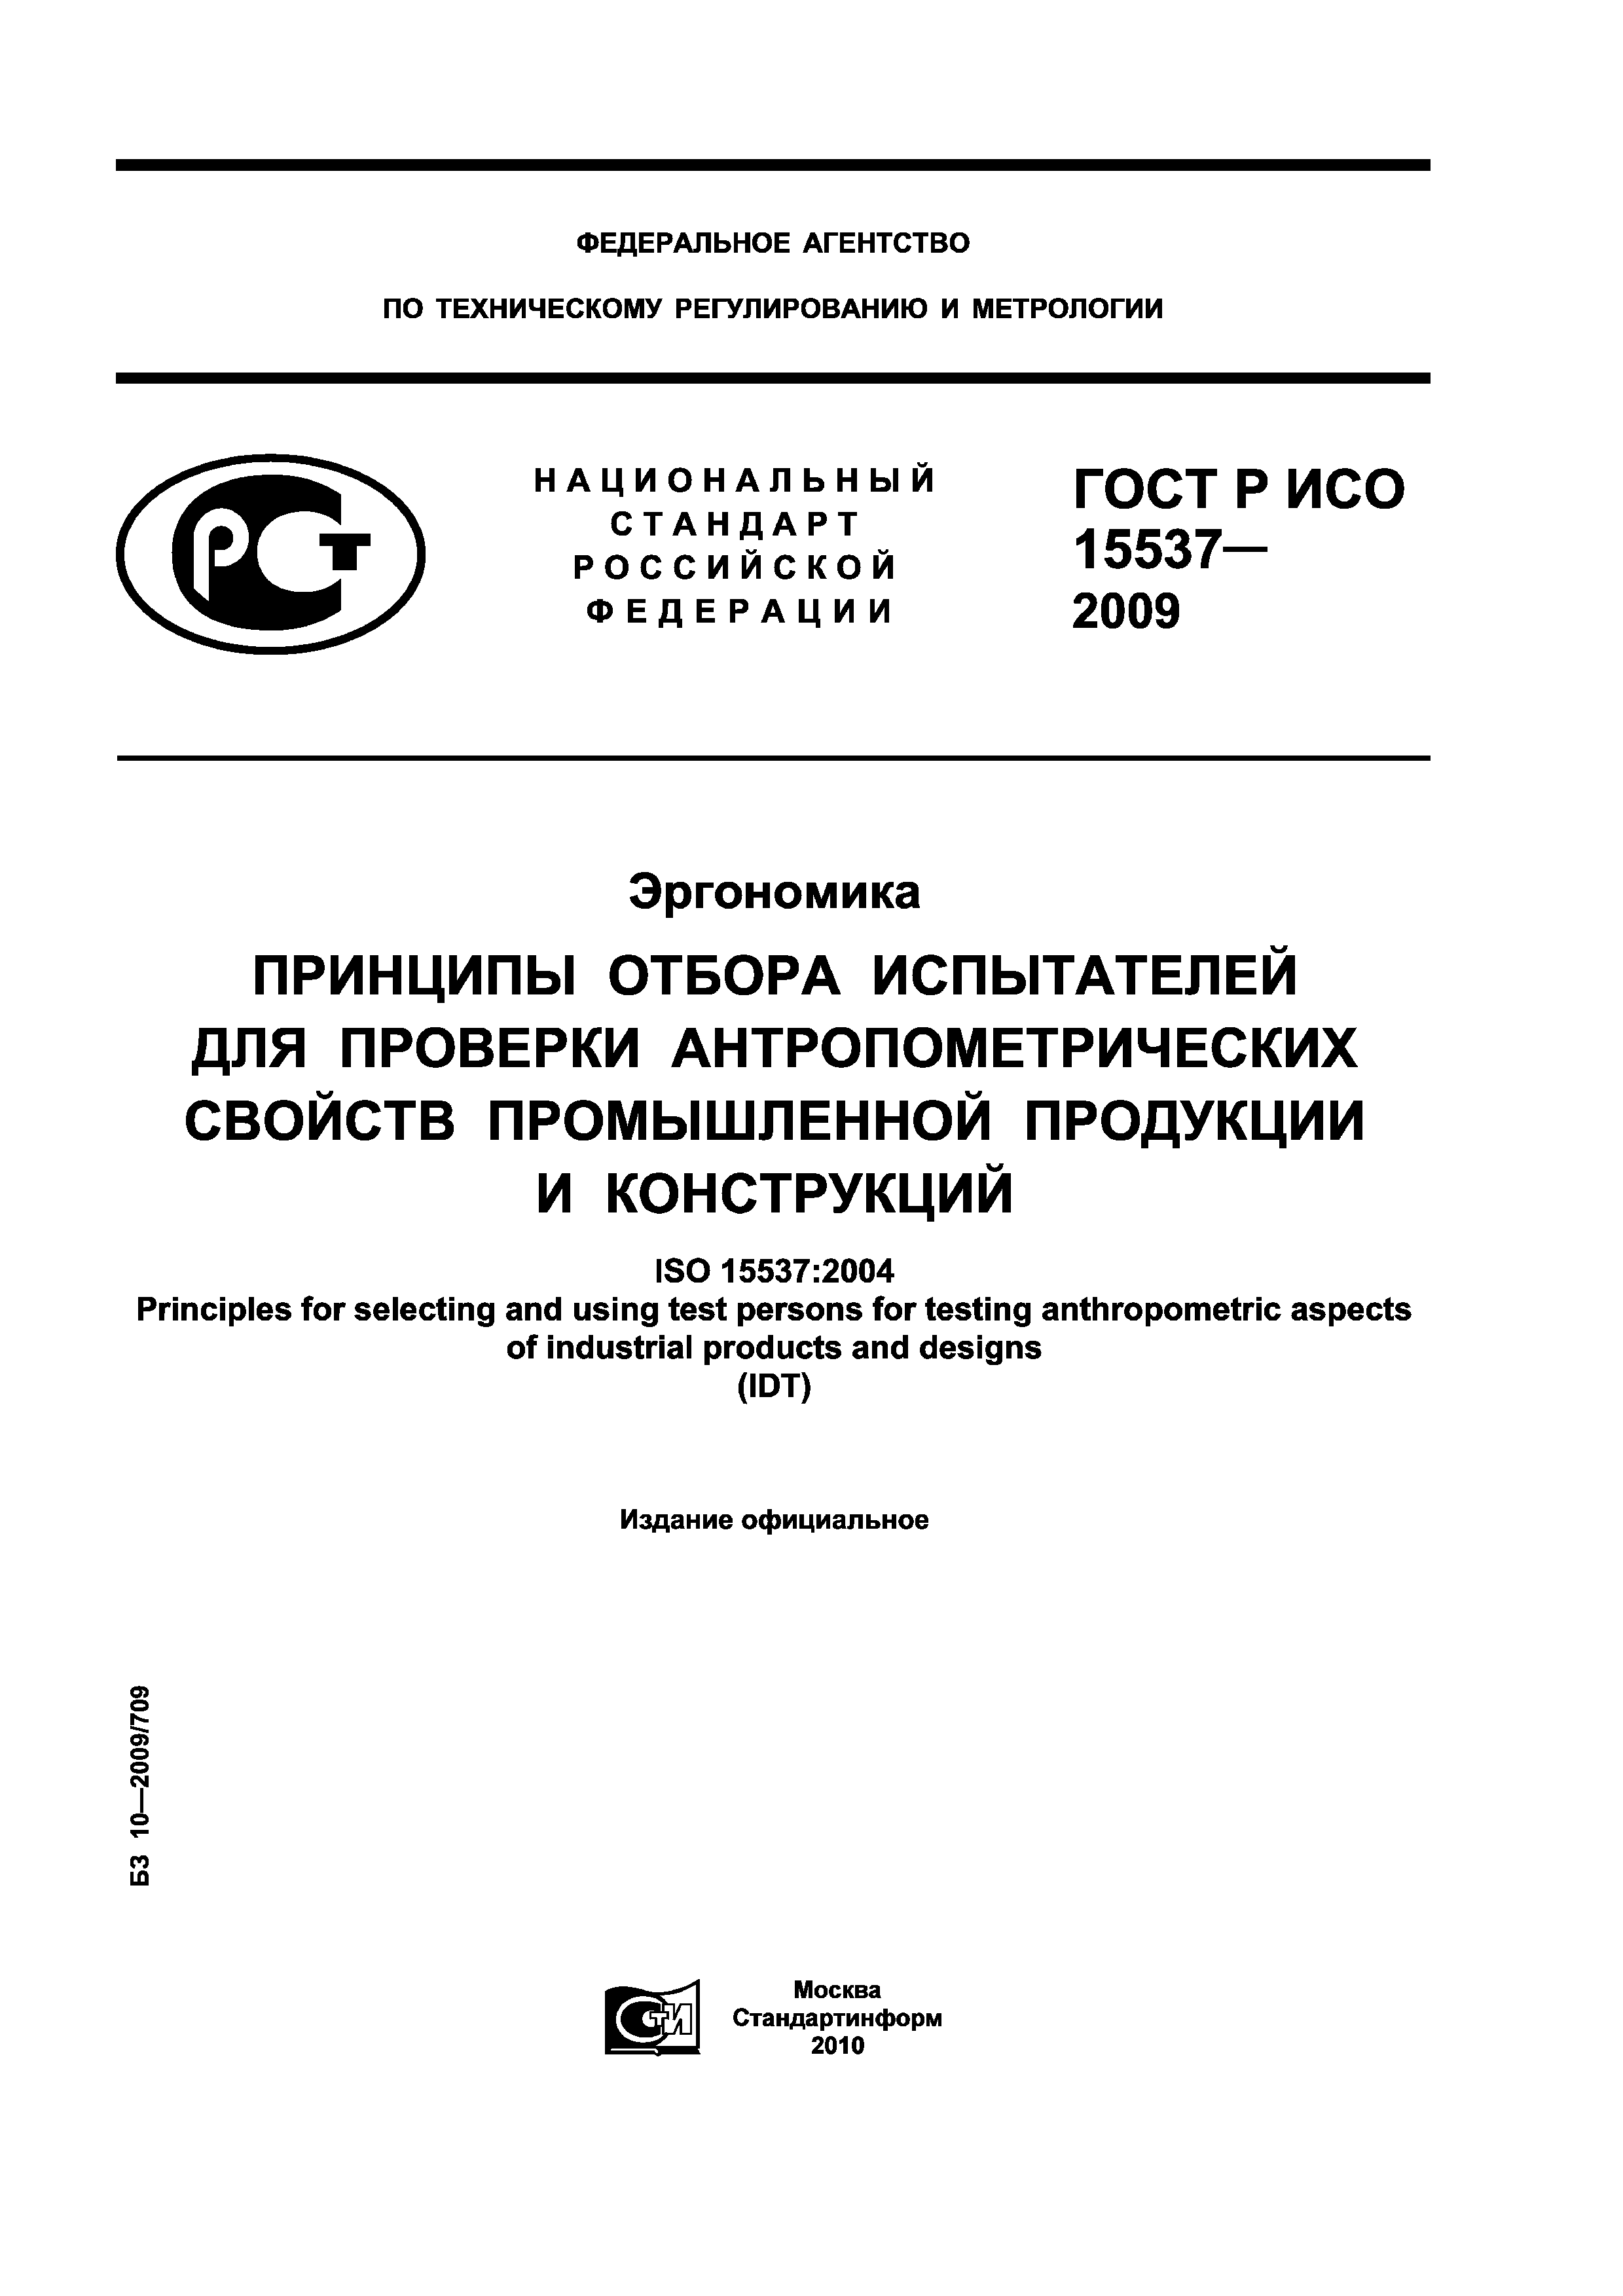 ГОСТ Р ИСО 15537-2009